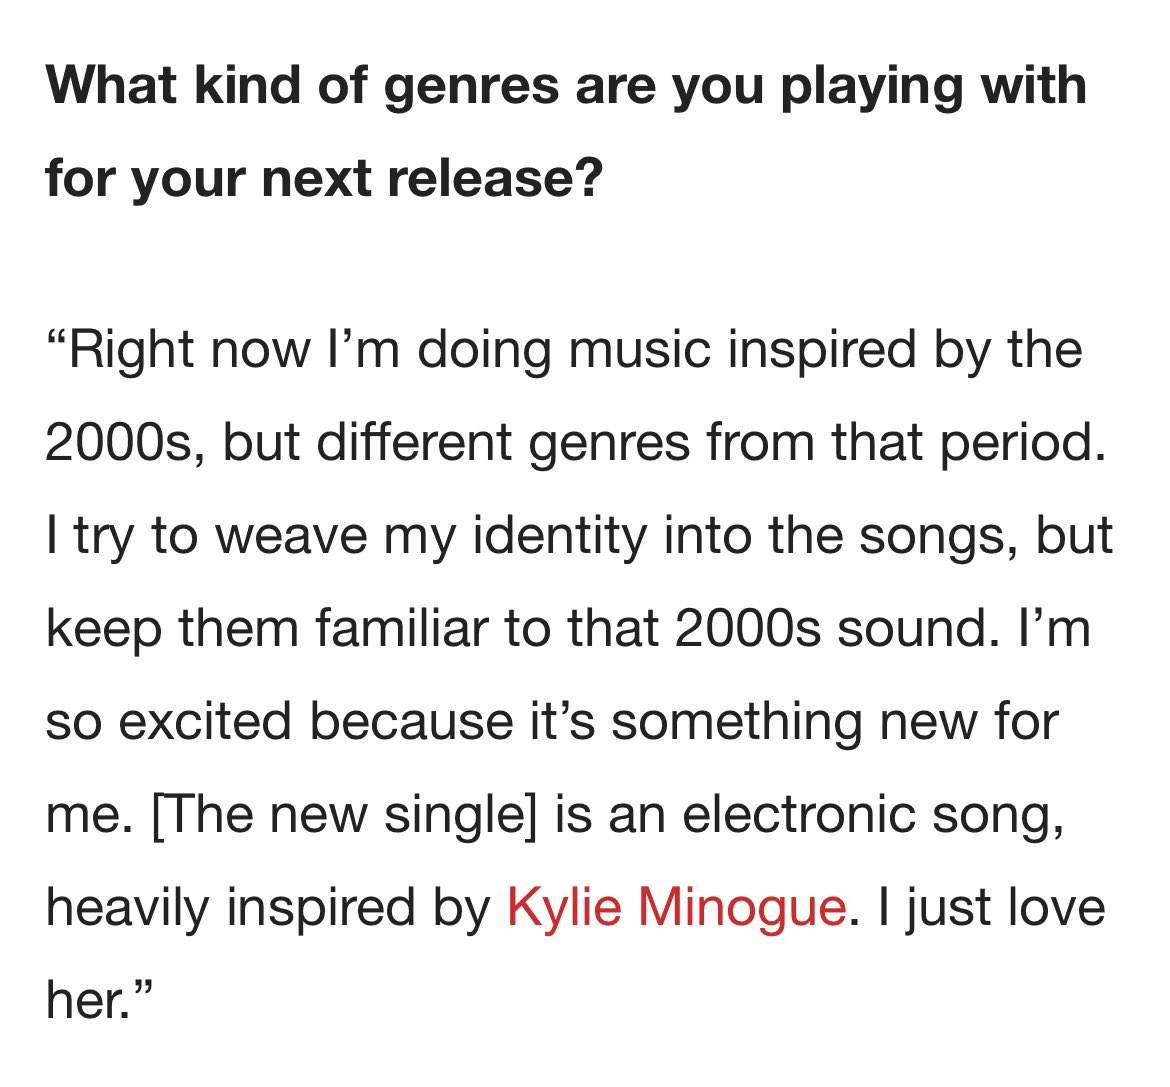 🎶 Emilia Mernes dice en @NME que su próximo tema es una canción de electrónica inspirada en Kylie Minogue: “I just love her”